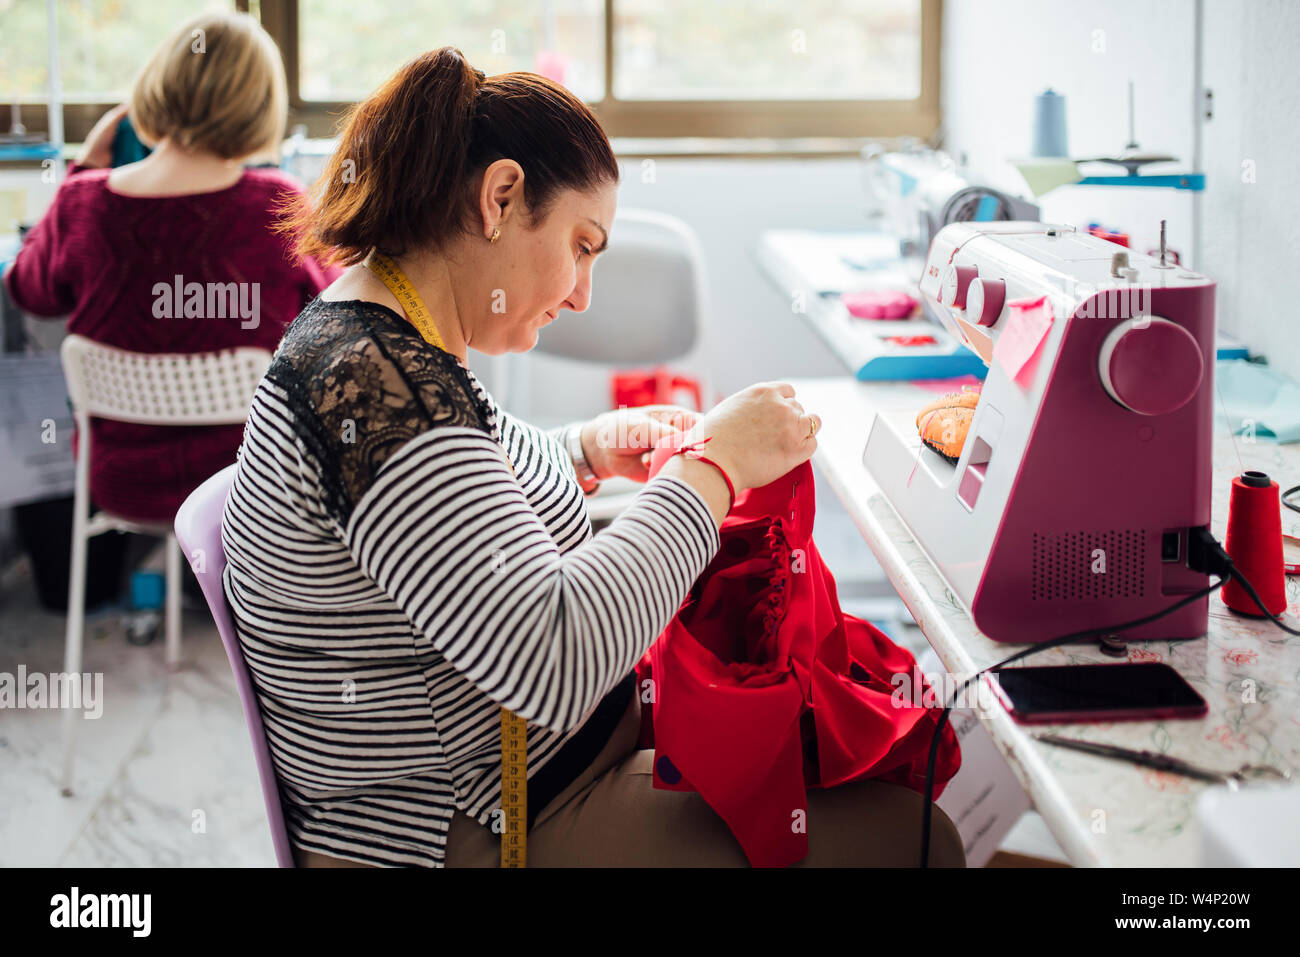 Femme adulte à l'aide d'une machine à coudre dans un atelier de couture Banque D'Images